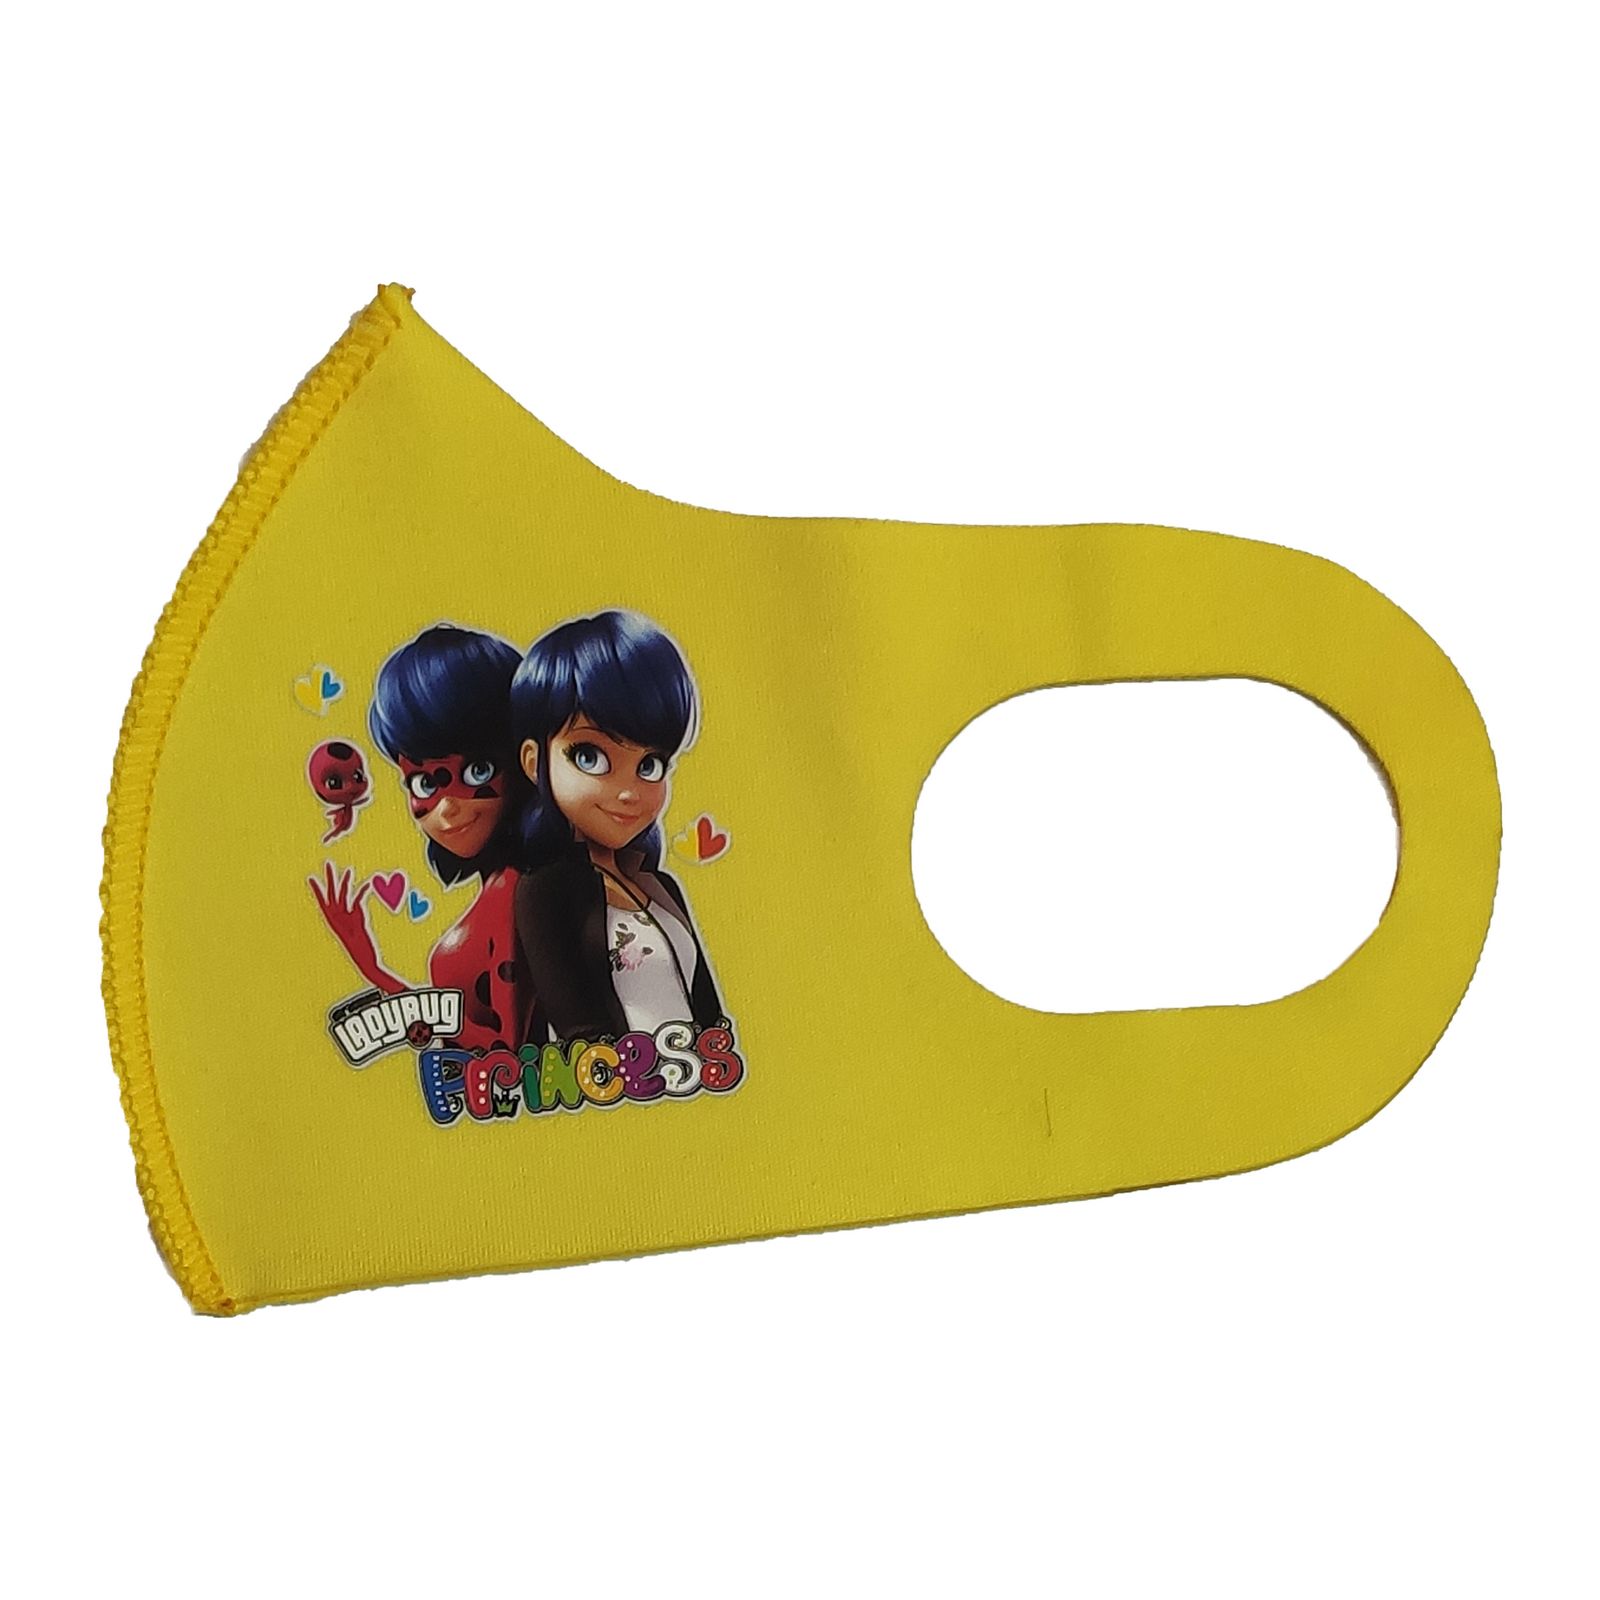 ماسک تزیینی بچگانه طرح PRINCESS کد 30696 رنگ زرد -  - 3